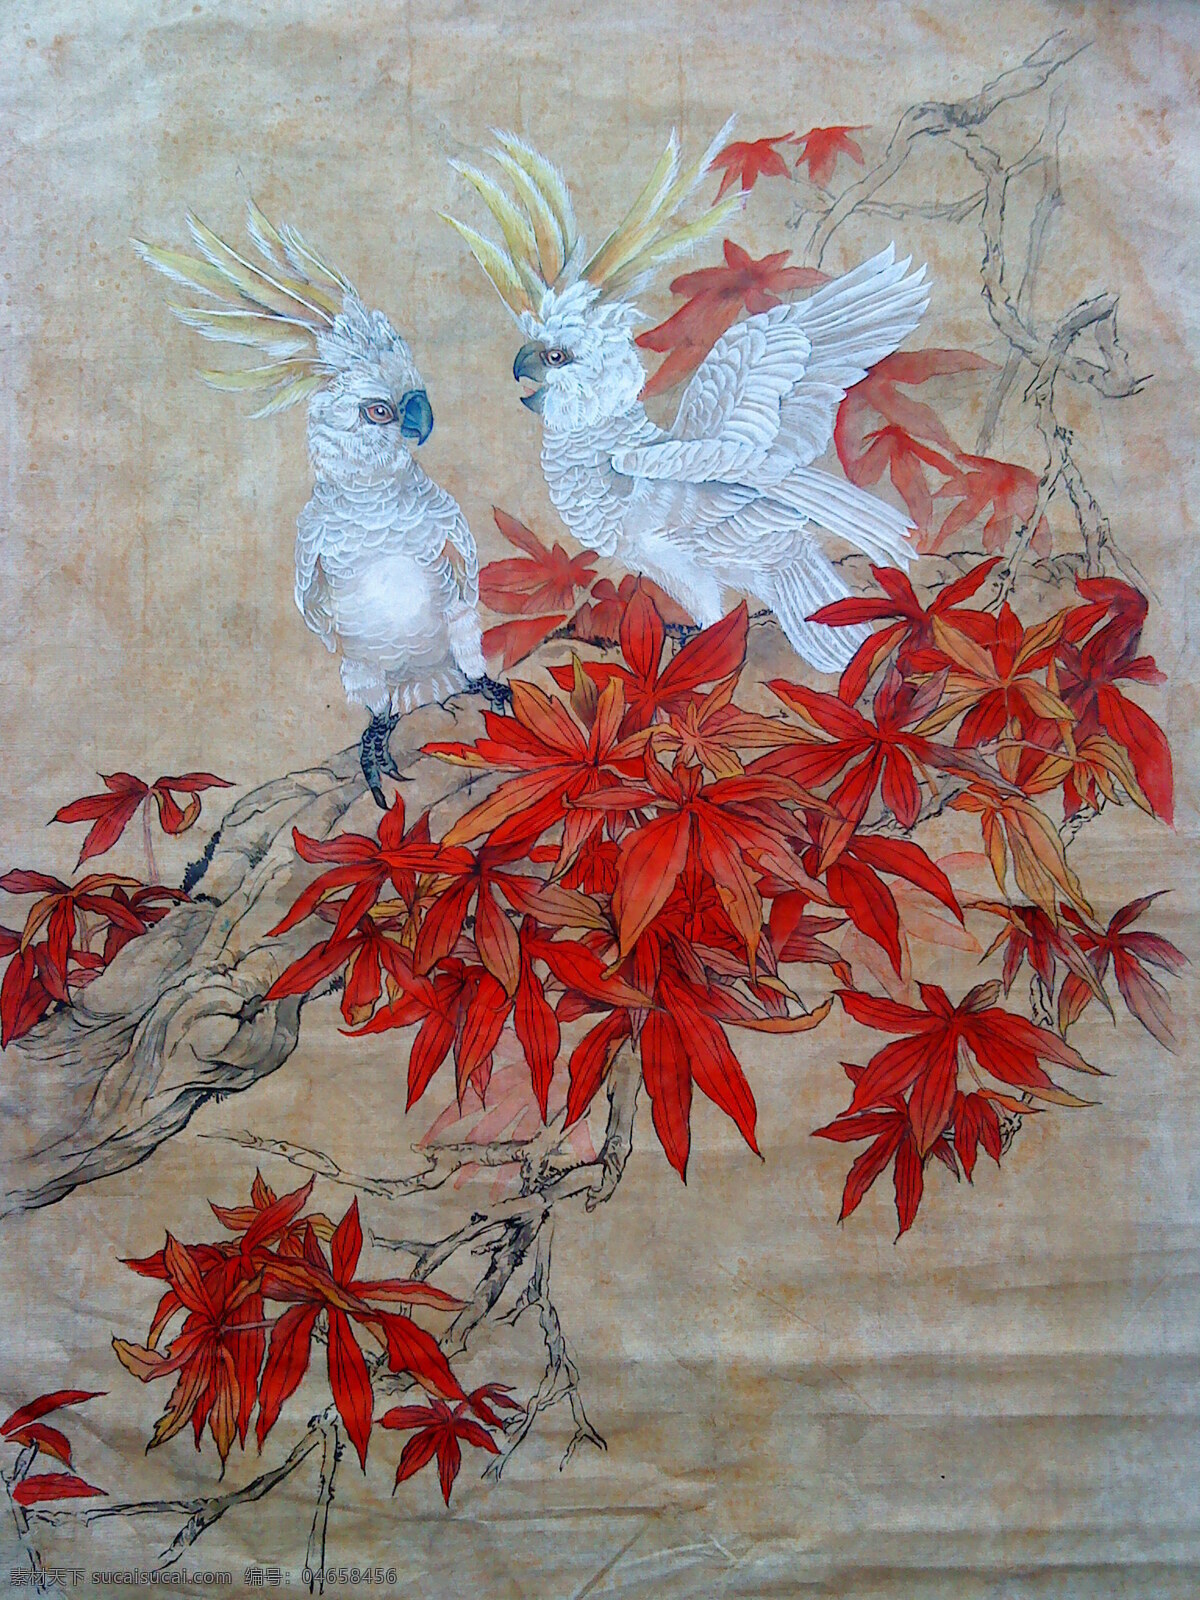 鹦鹉 工笔画 红叶 枫叶 绘画书法 文化艺术